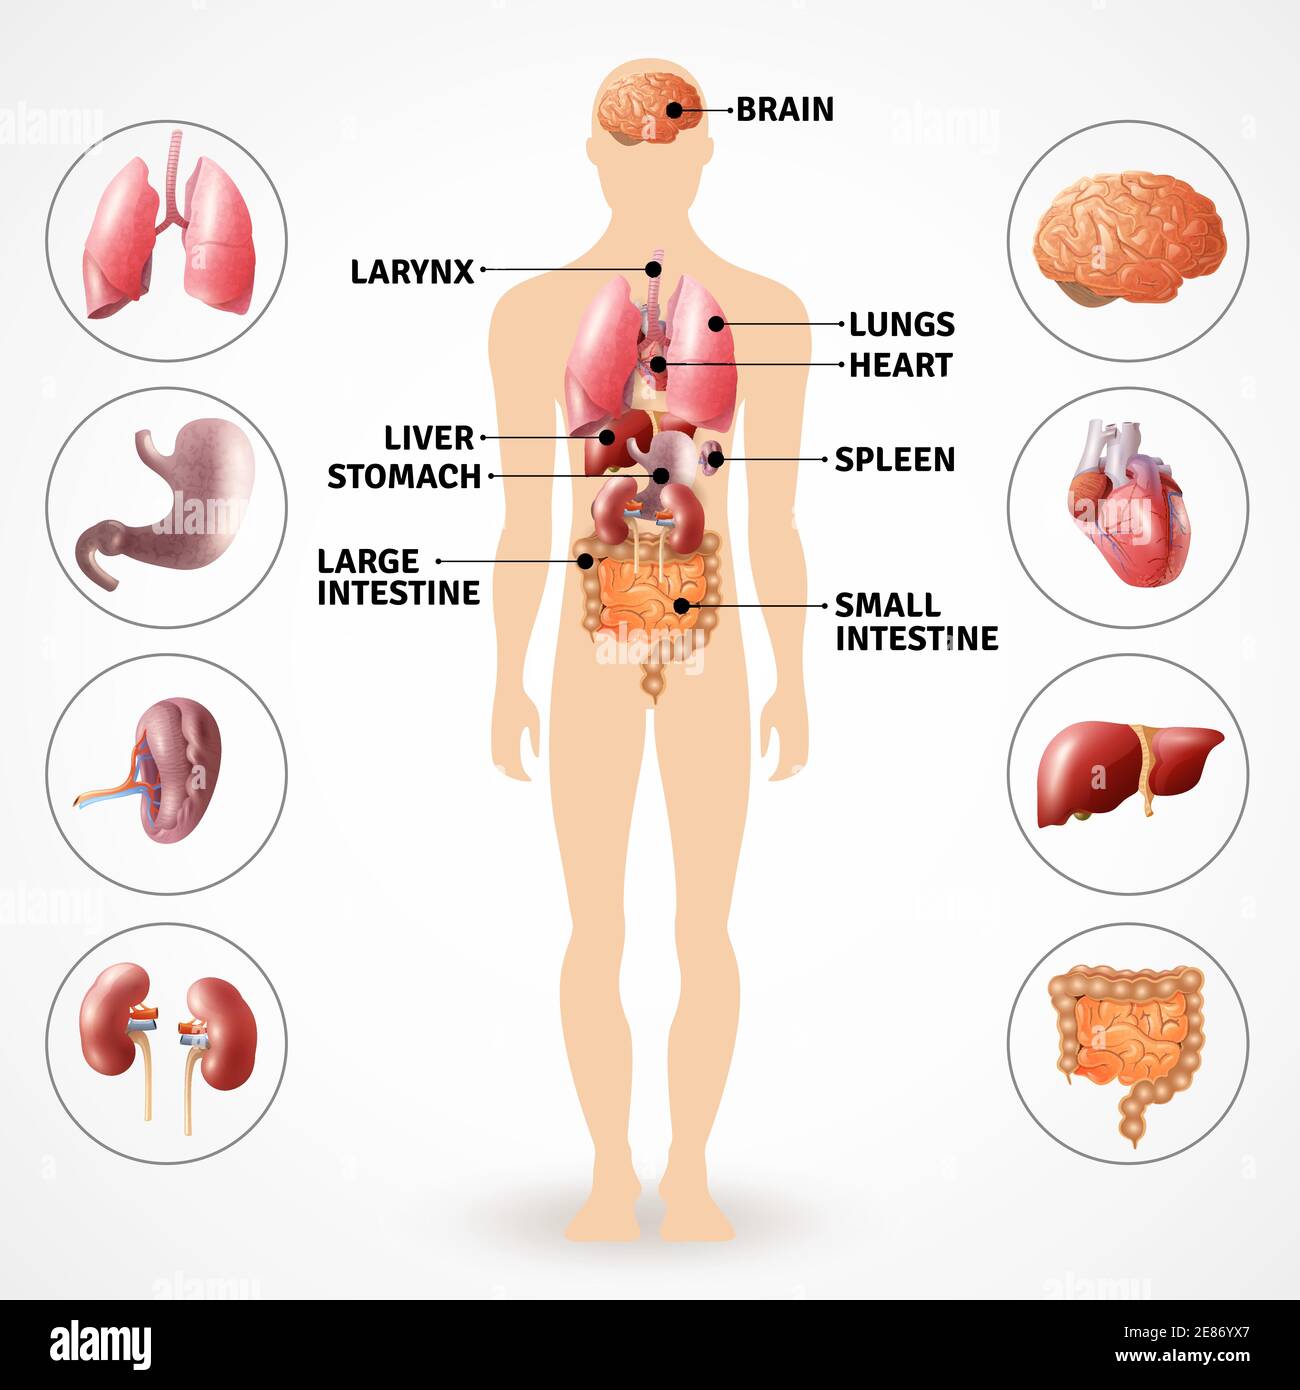 Poster medico raffigurante organi interni dell'anatomia umana su